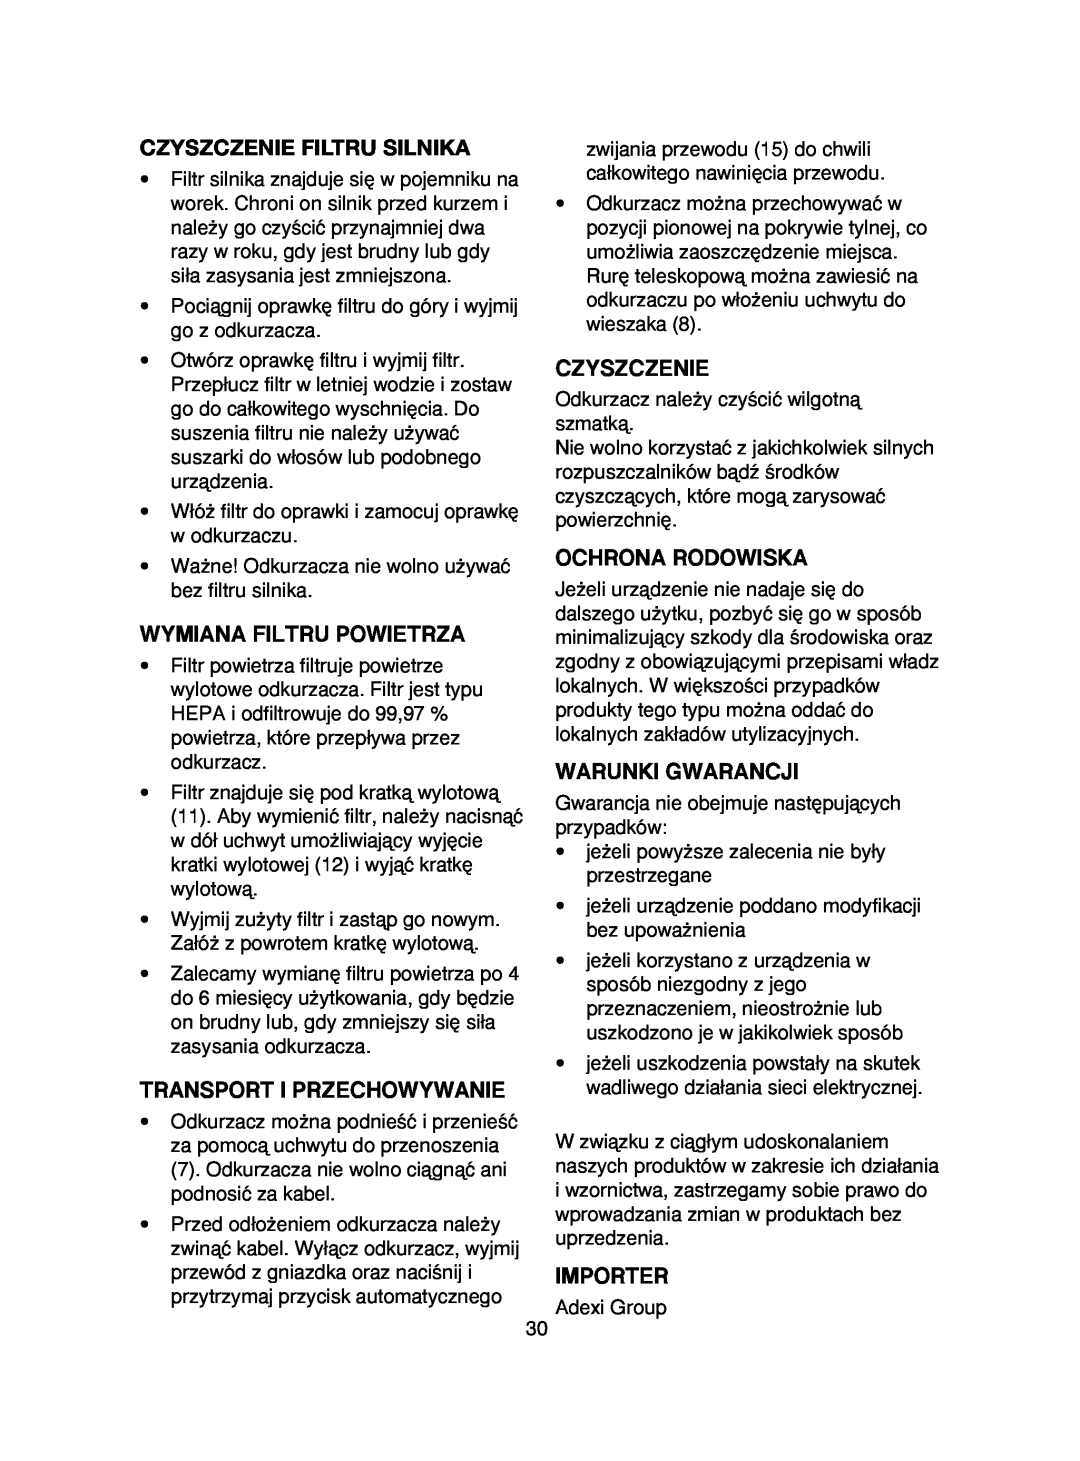 Melissa 640-061 manual Czyszczenie Filtru Silnika, Wymiana Filtru Powietrza, Transport I Przechowywanie, Ochrona Rodowiska 